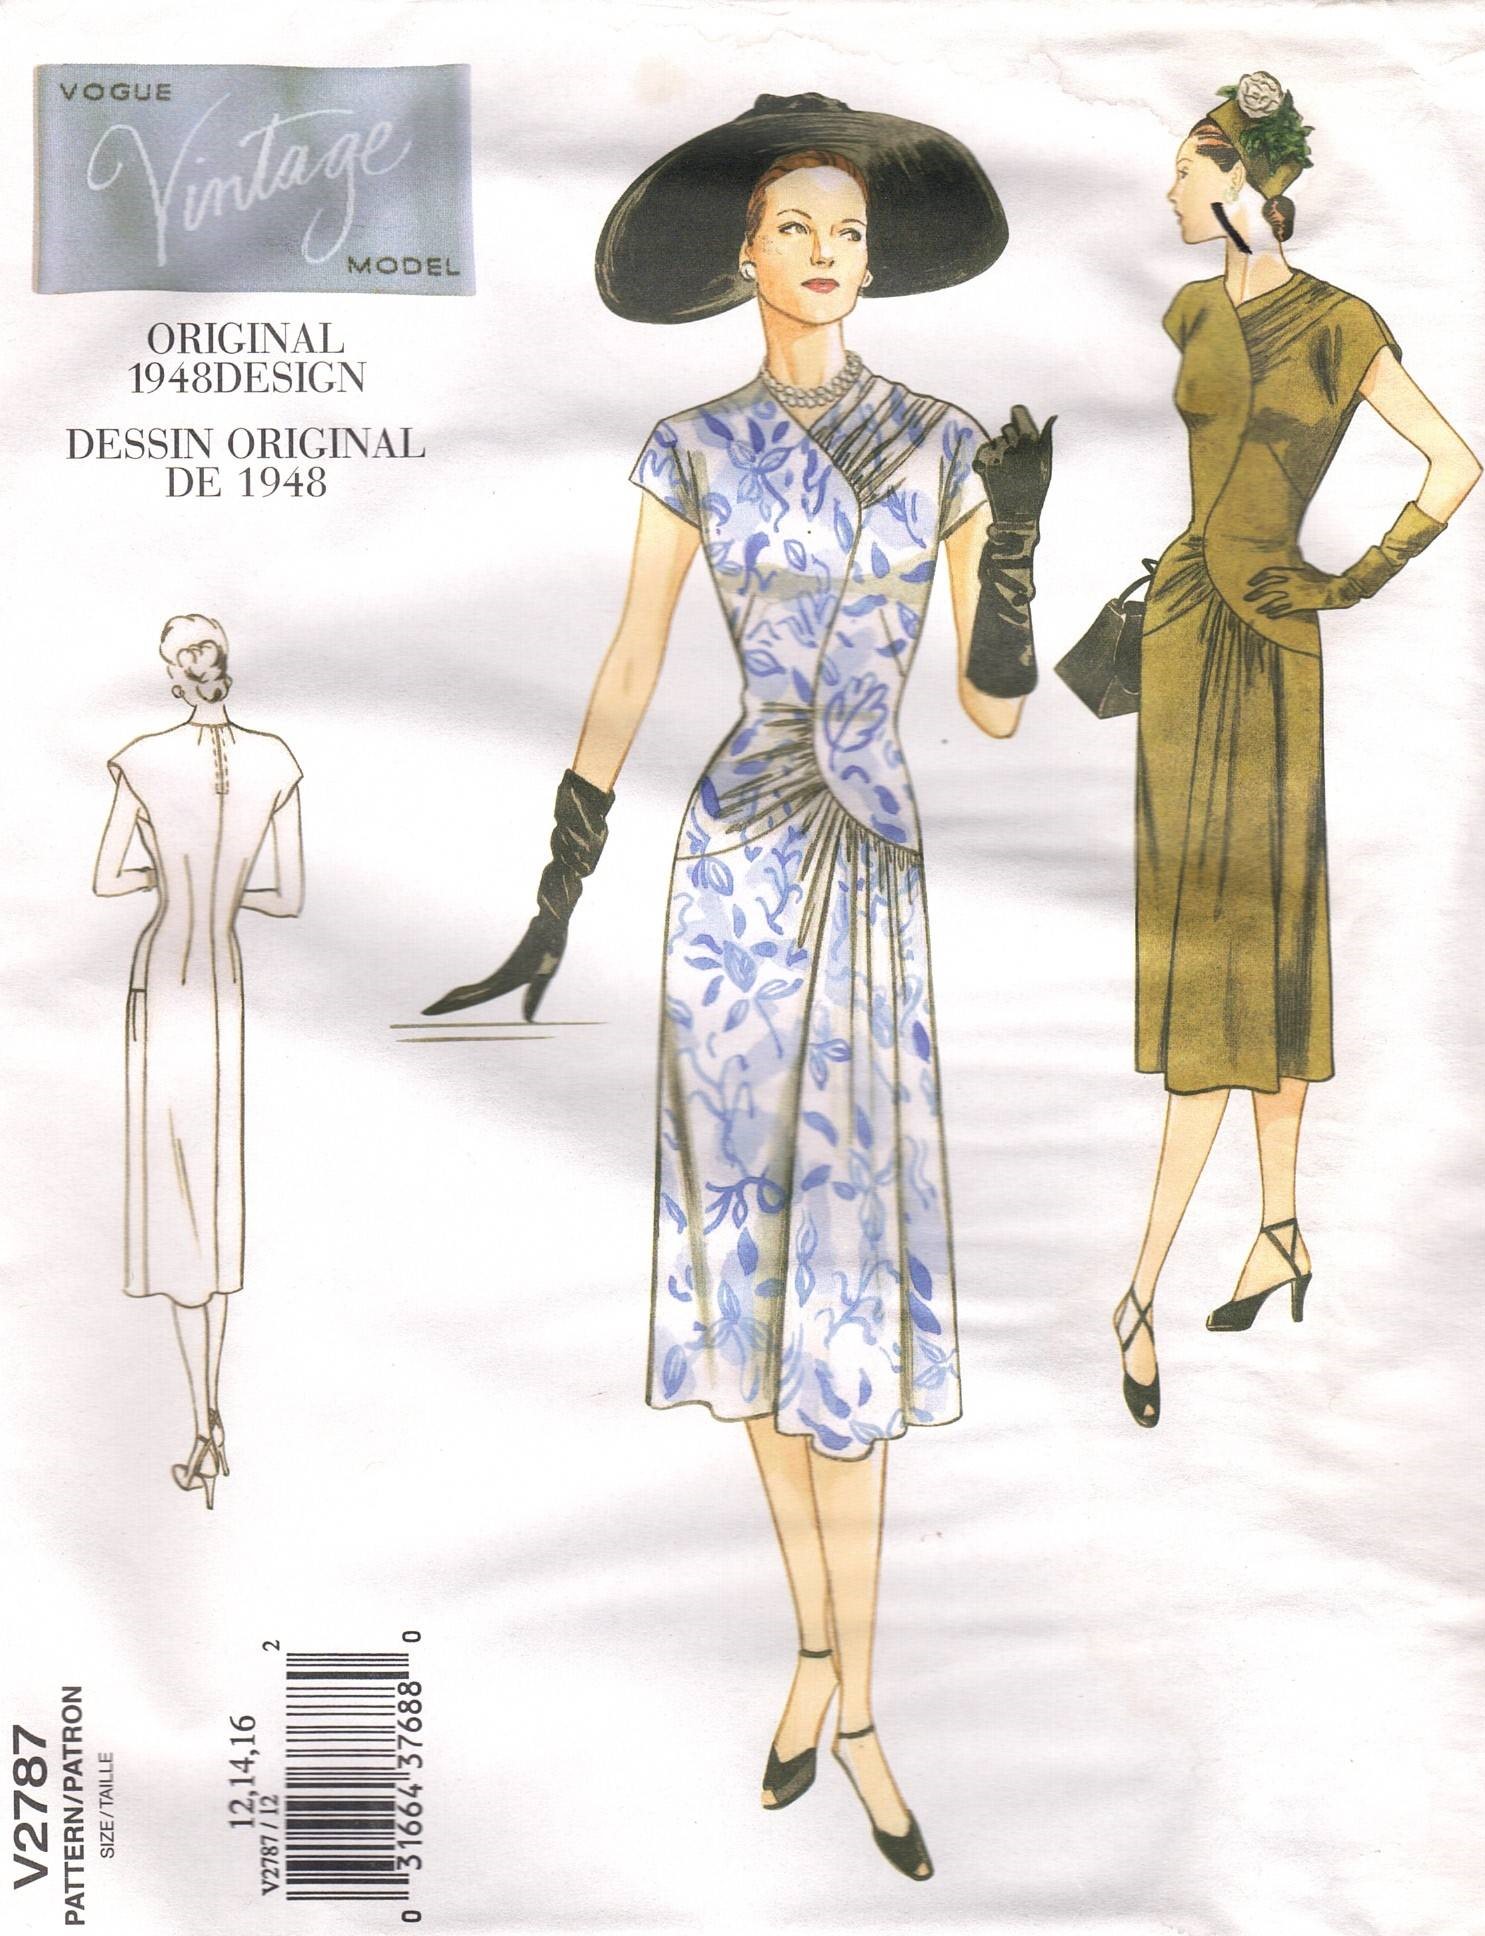 Vogue Pattern 2787 Vintage Model original dress design from 1948 Sizes  12